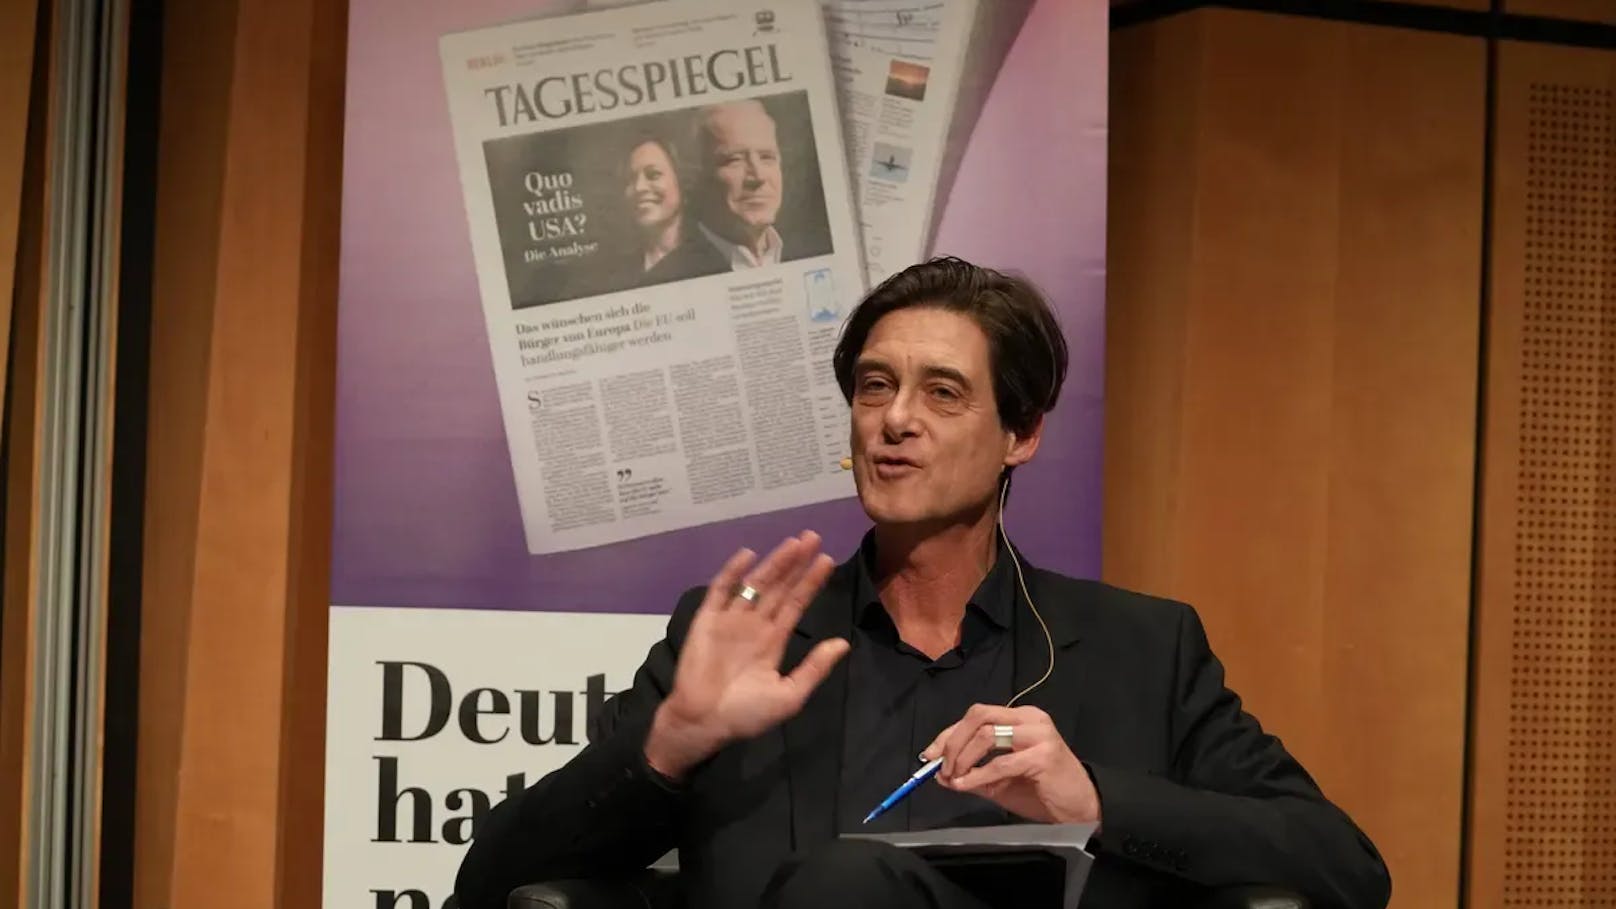 Zeitung "Tagesspiegel" verbietet die Gendersprache